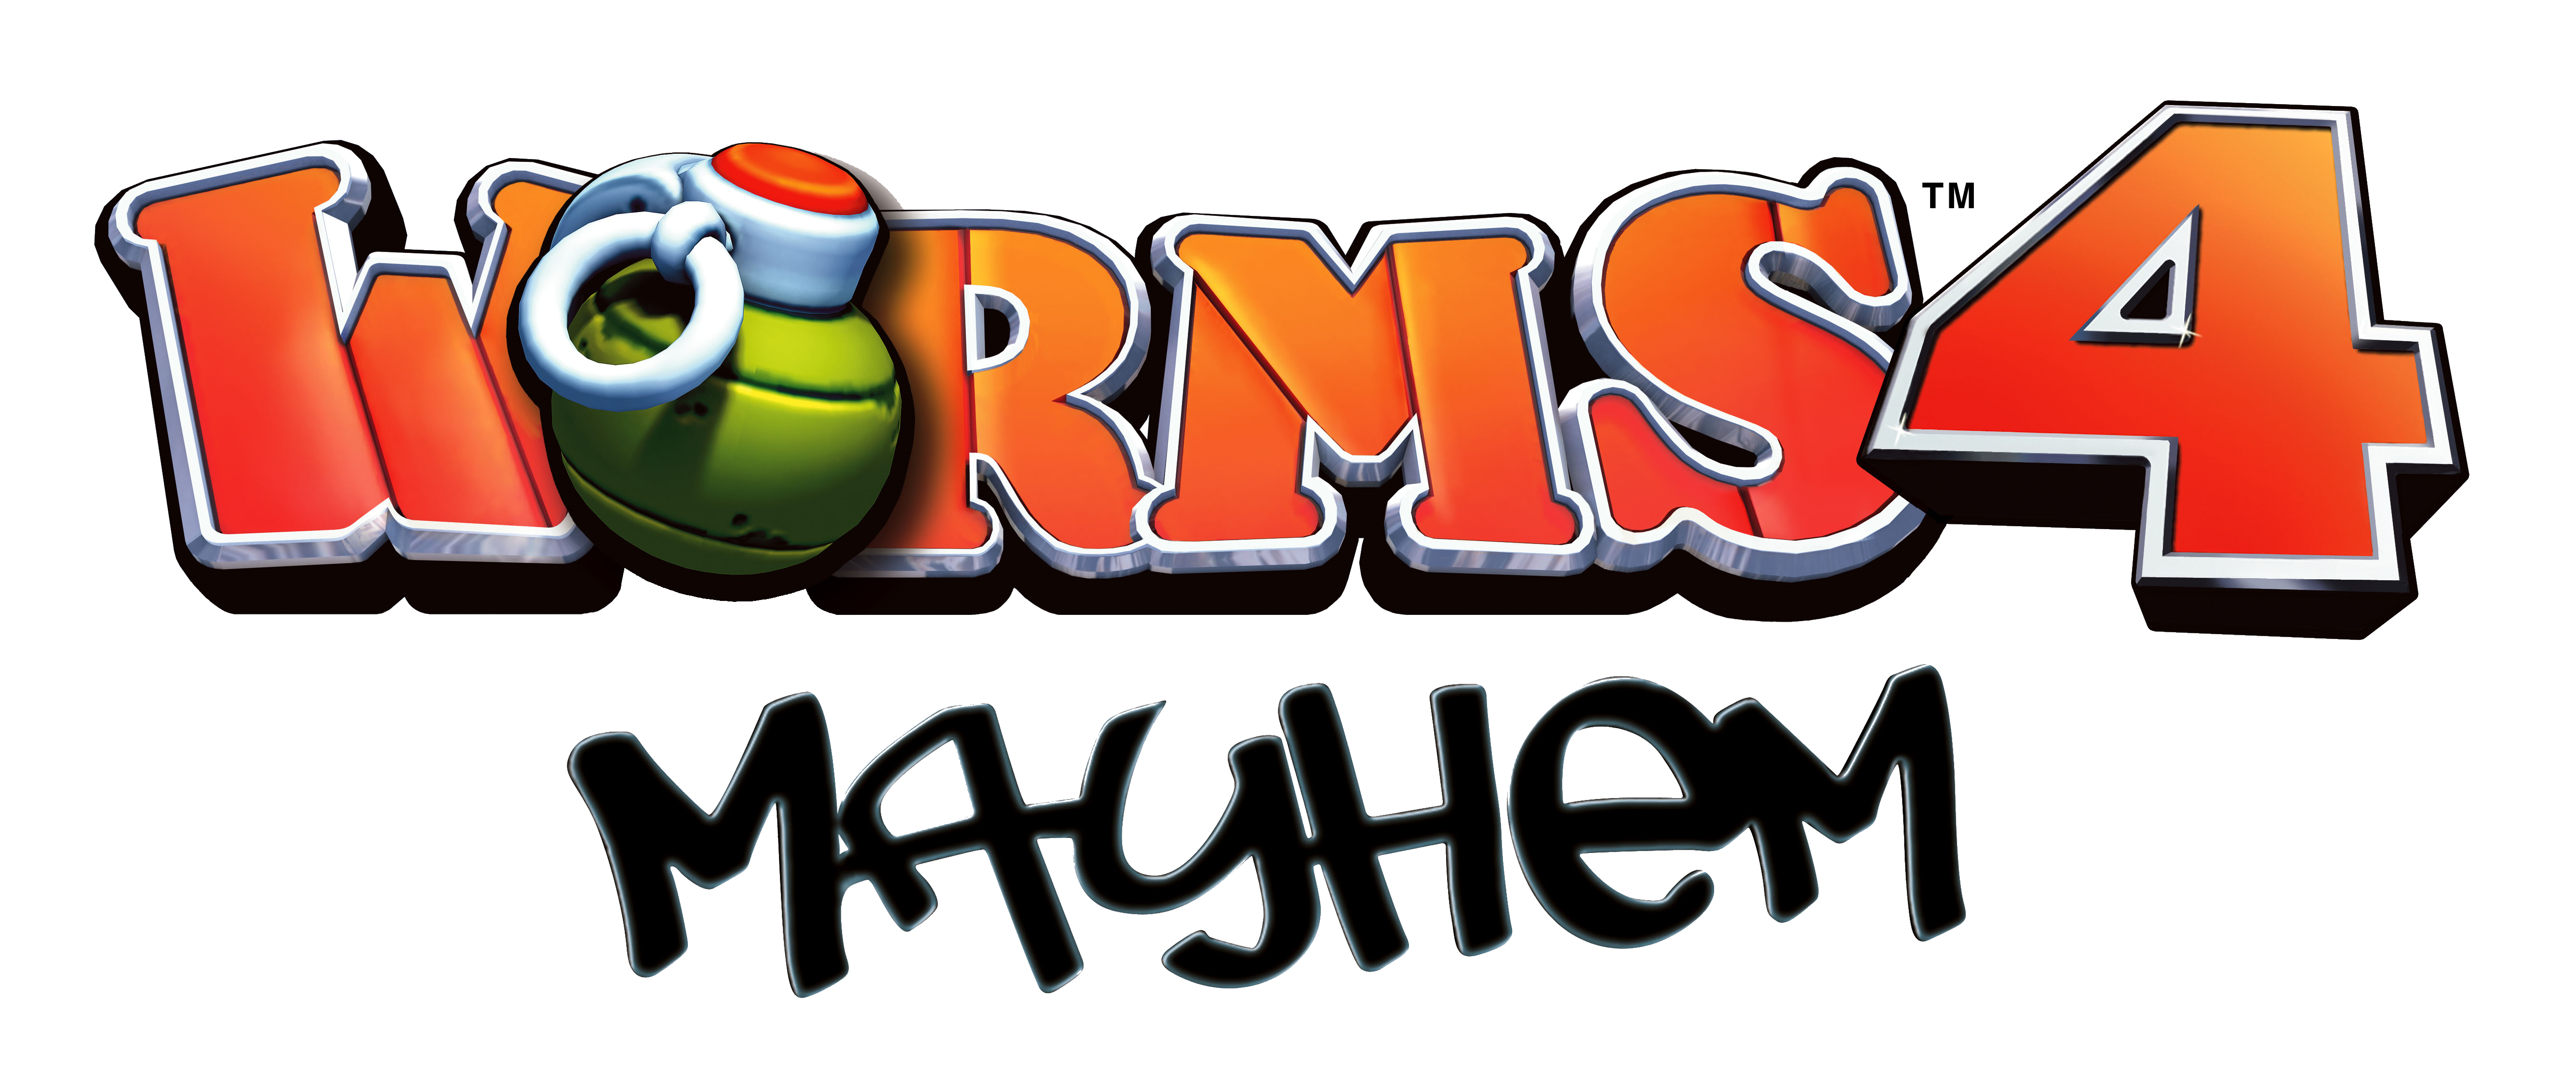 Worms mayhem steam фото 55